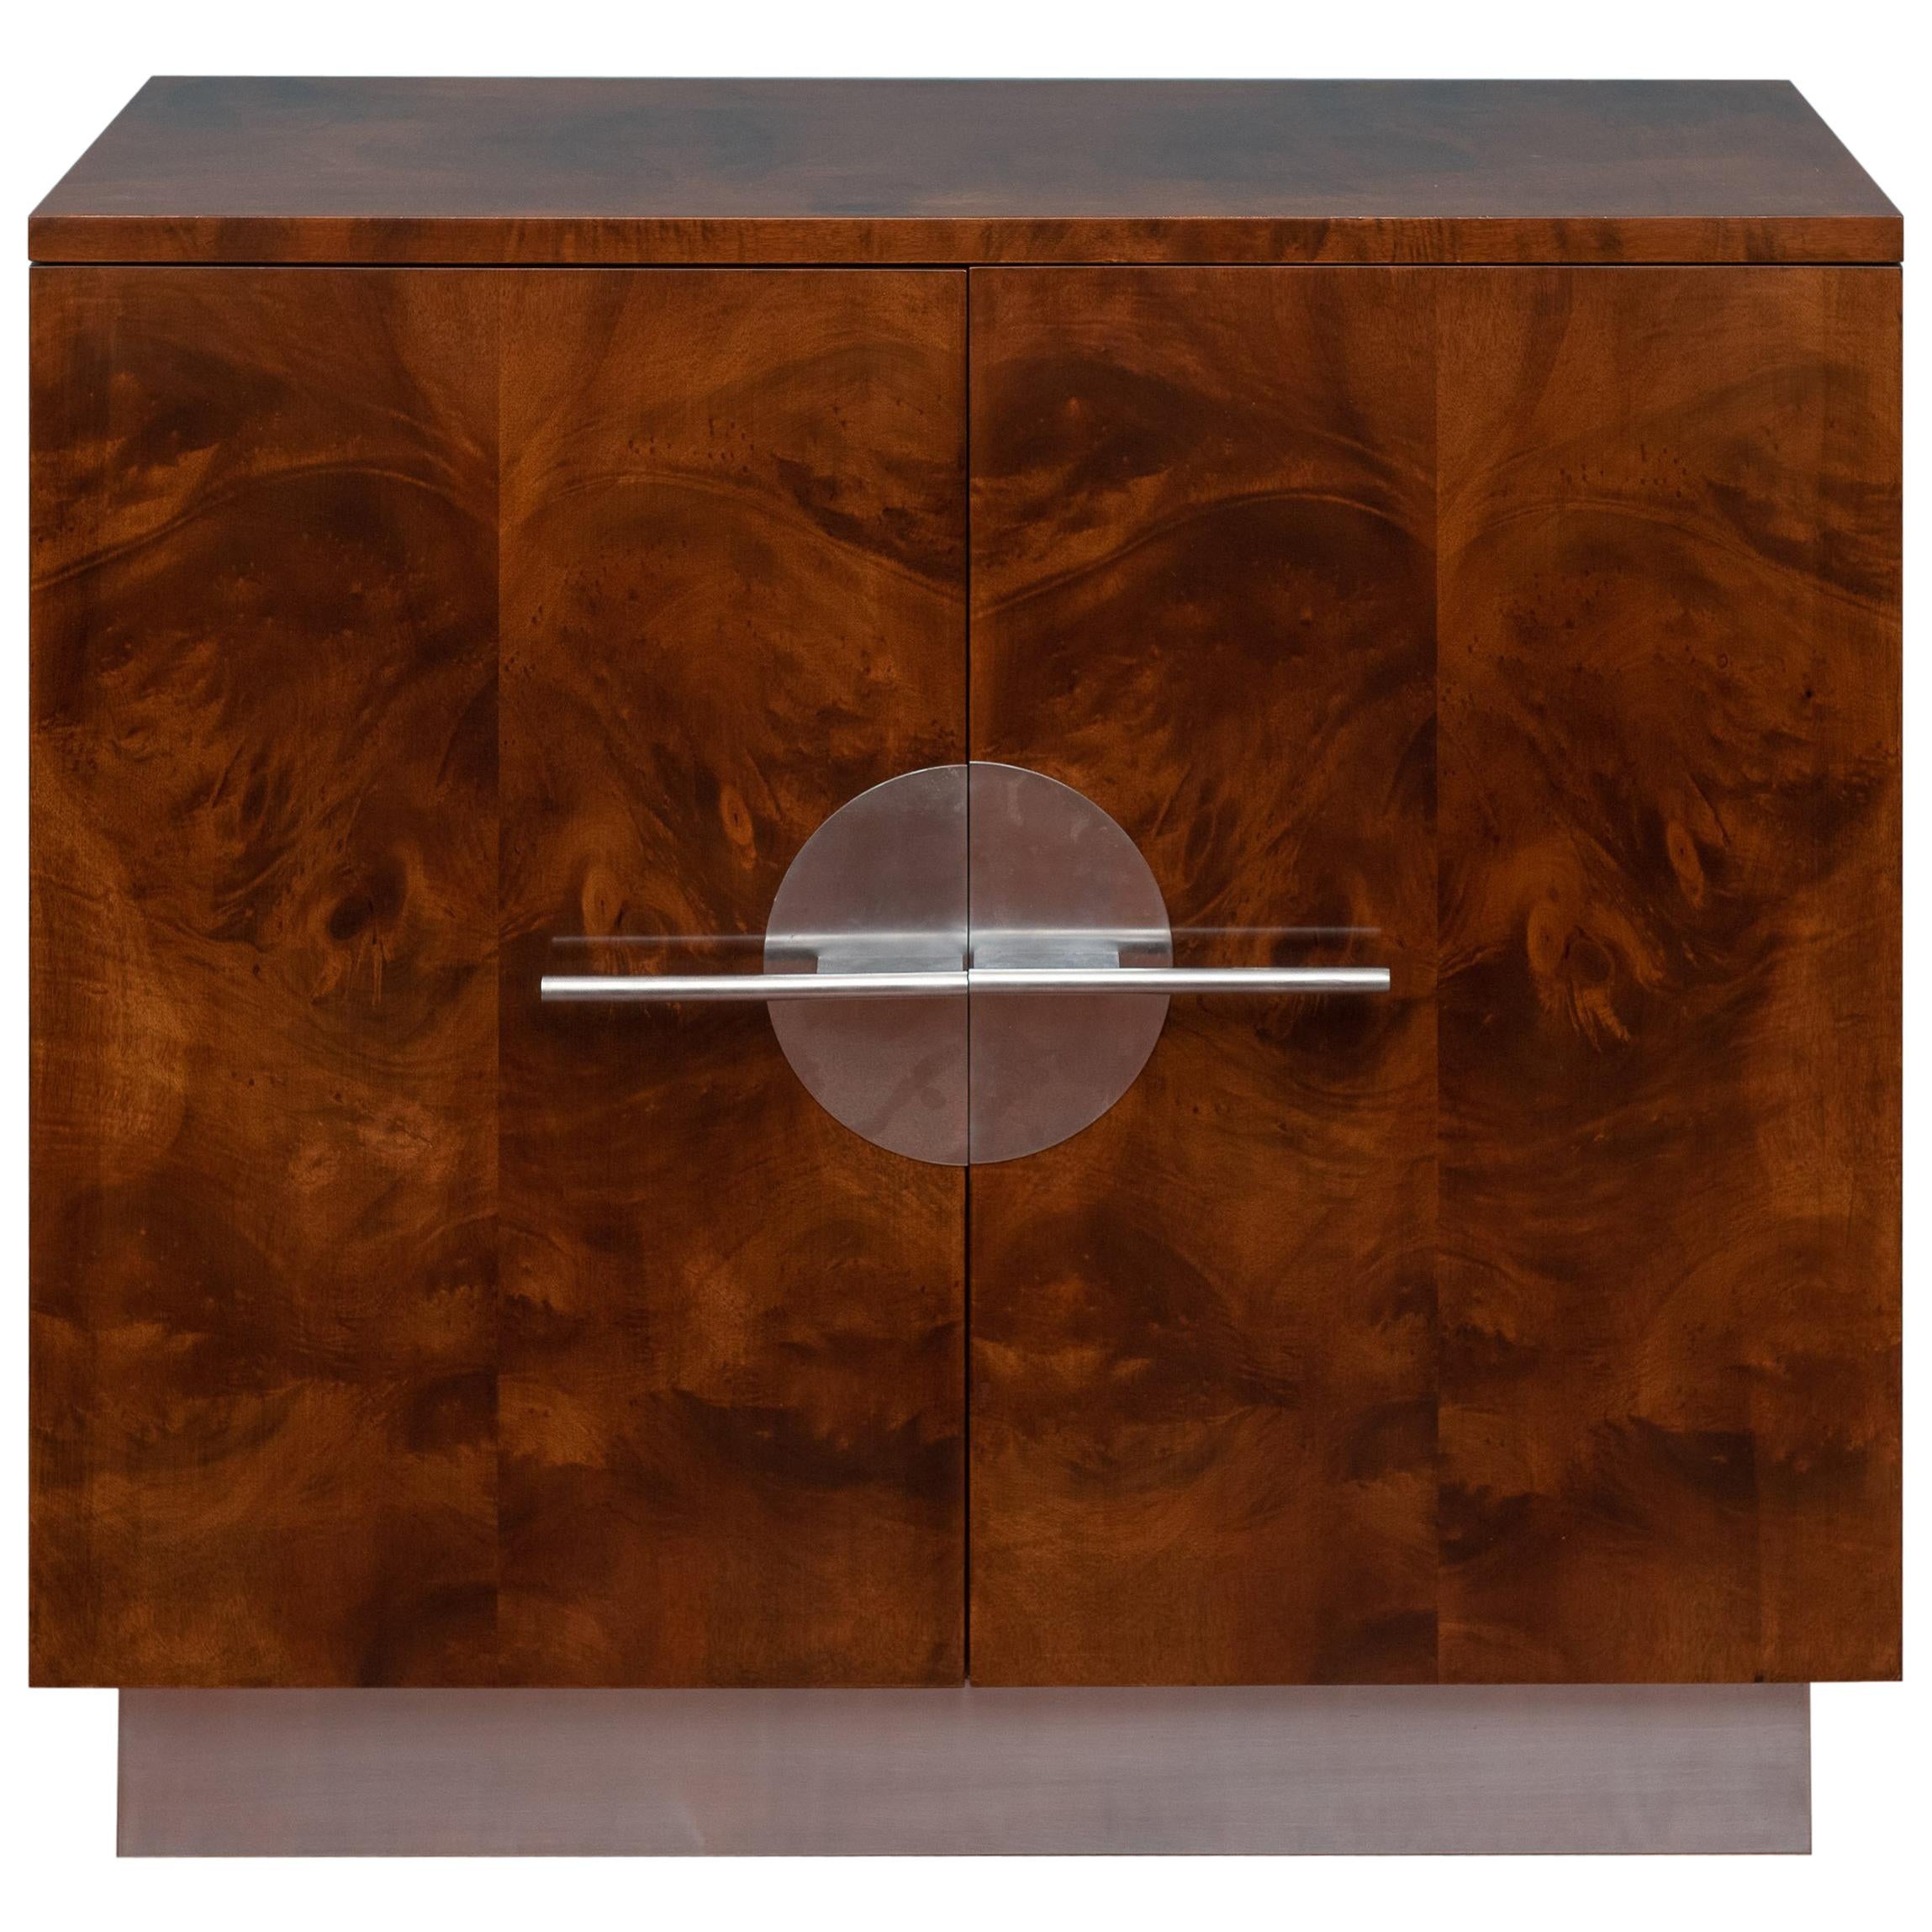 Streamline Modern Cabinet by Walter Dorwin Teague